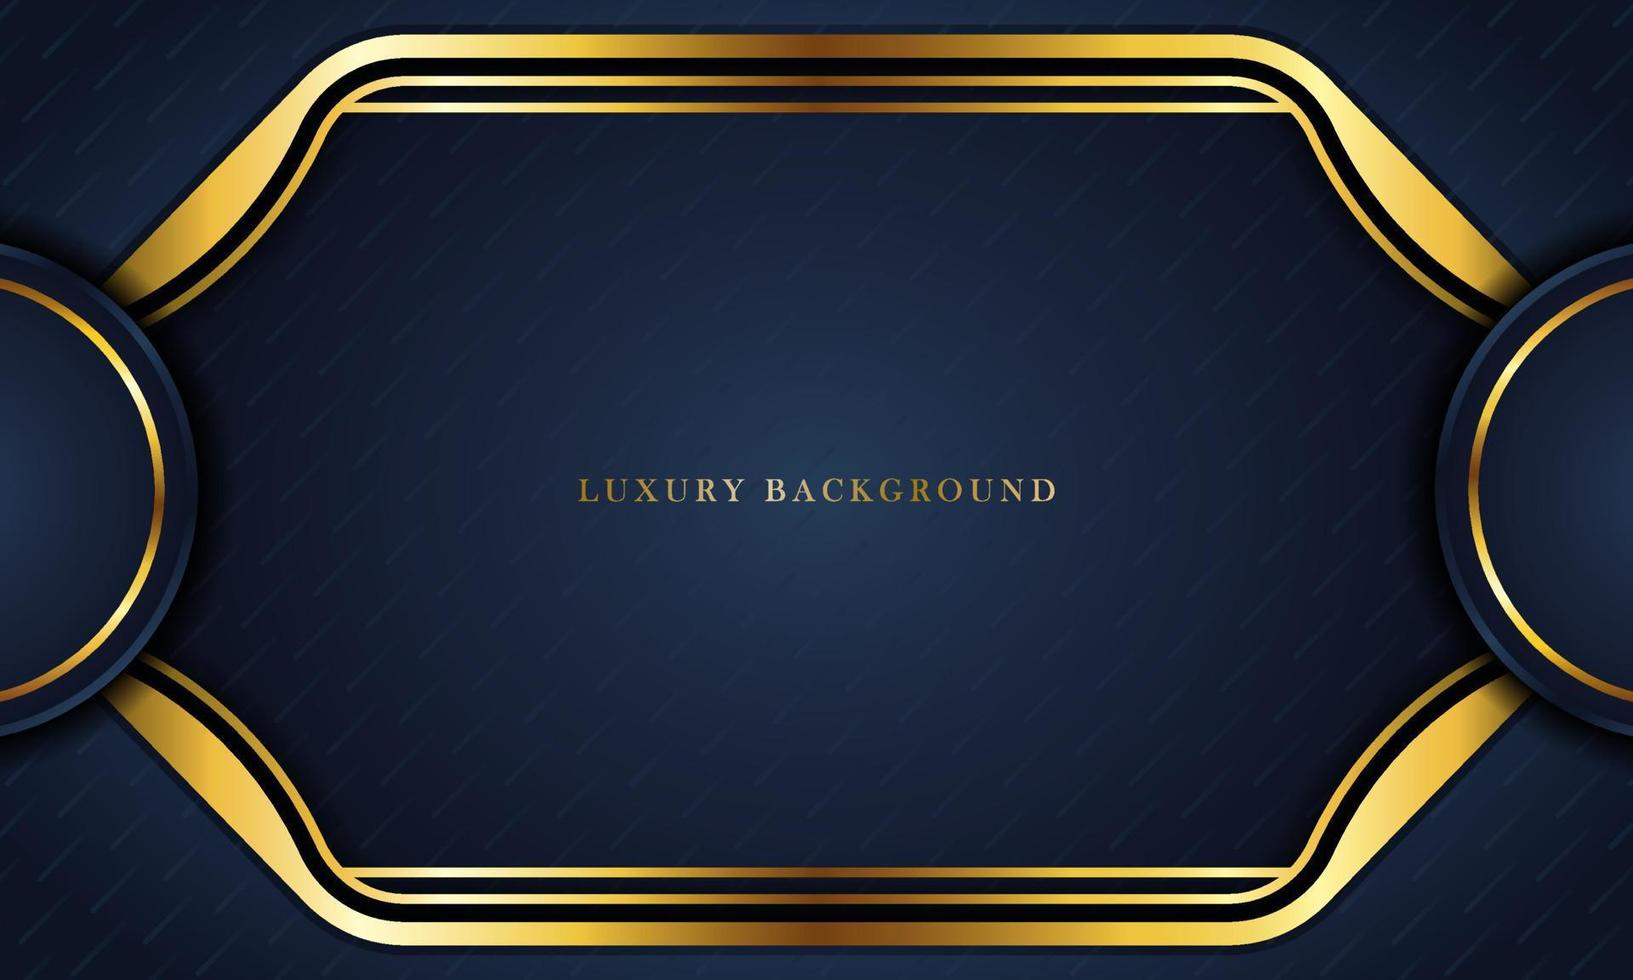 luxuriöser dunkelblauer hintergrund mit einer goldenen farbkombination, perfekt für vorlagen, broschüren, visitenkarten, banner oder tapeten. elegantes Design. vektor